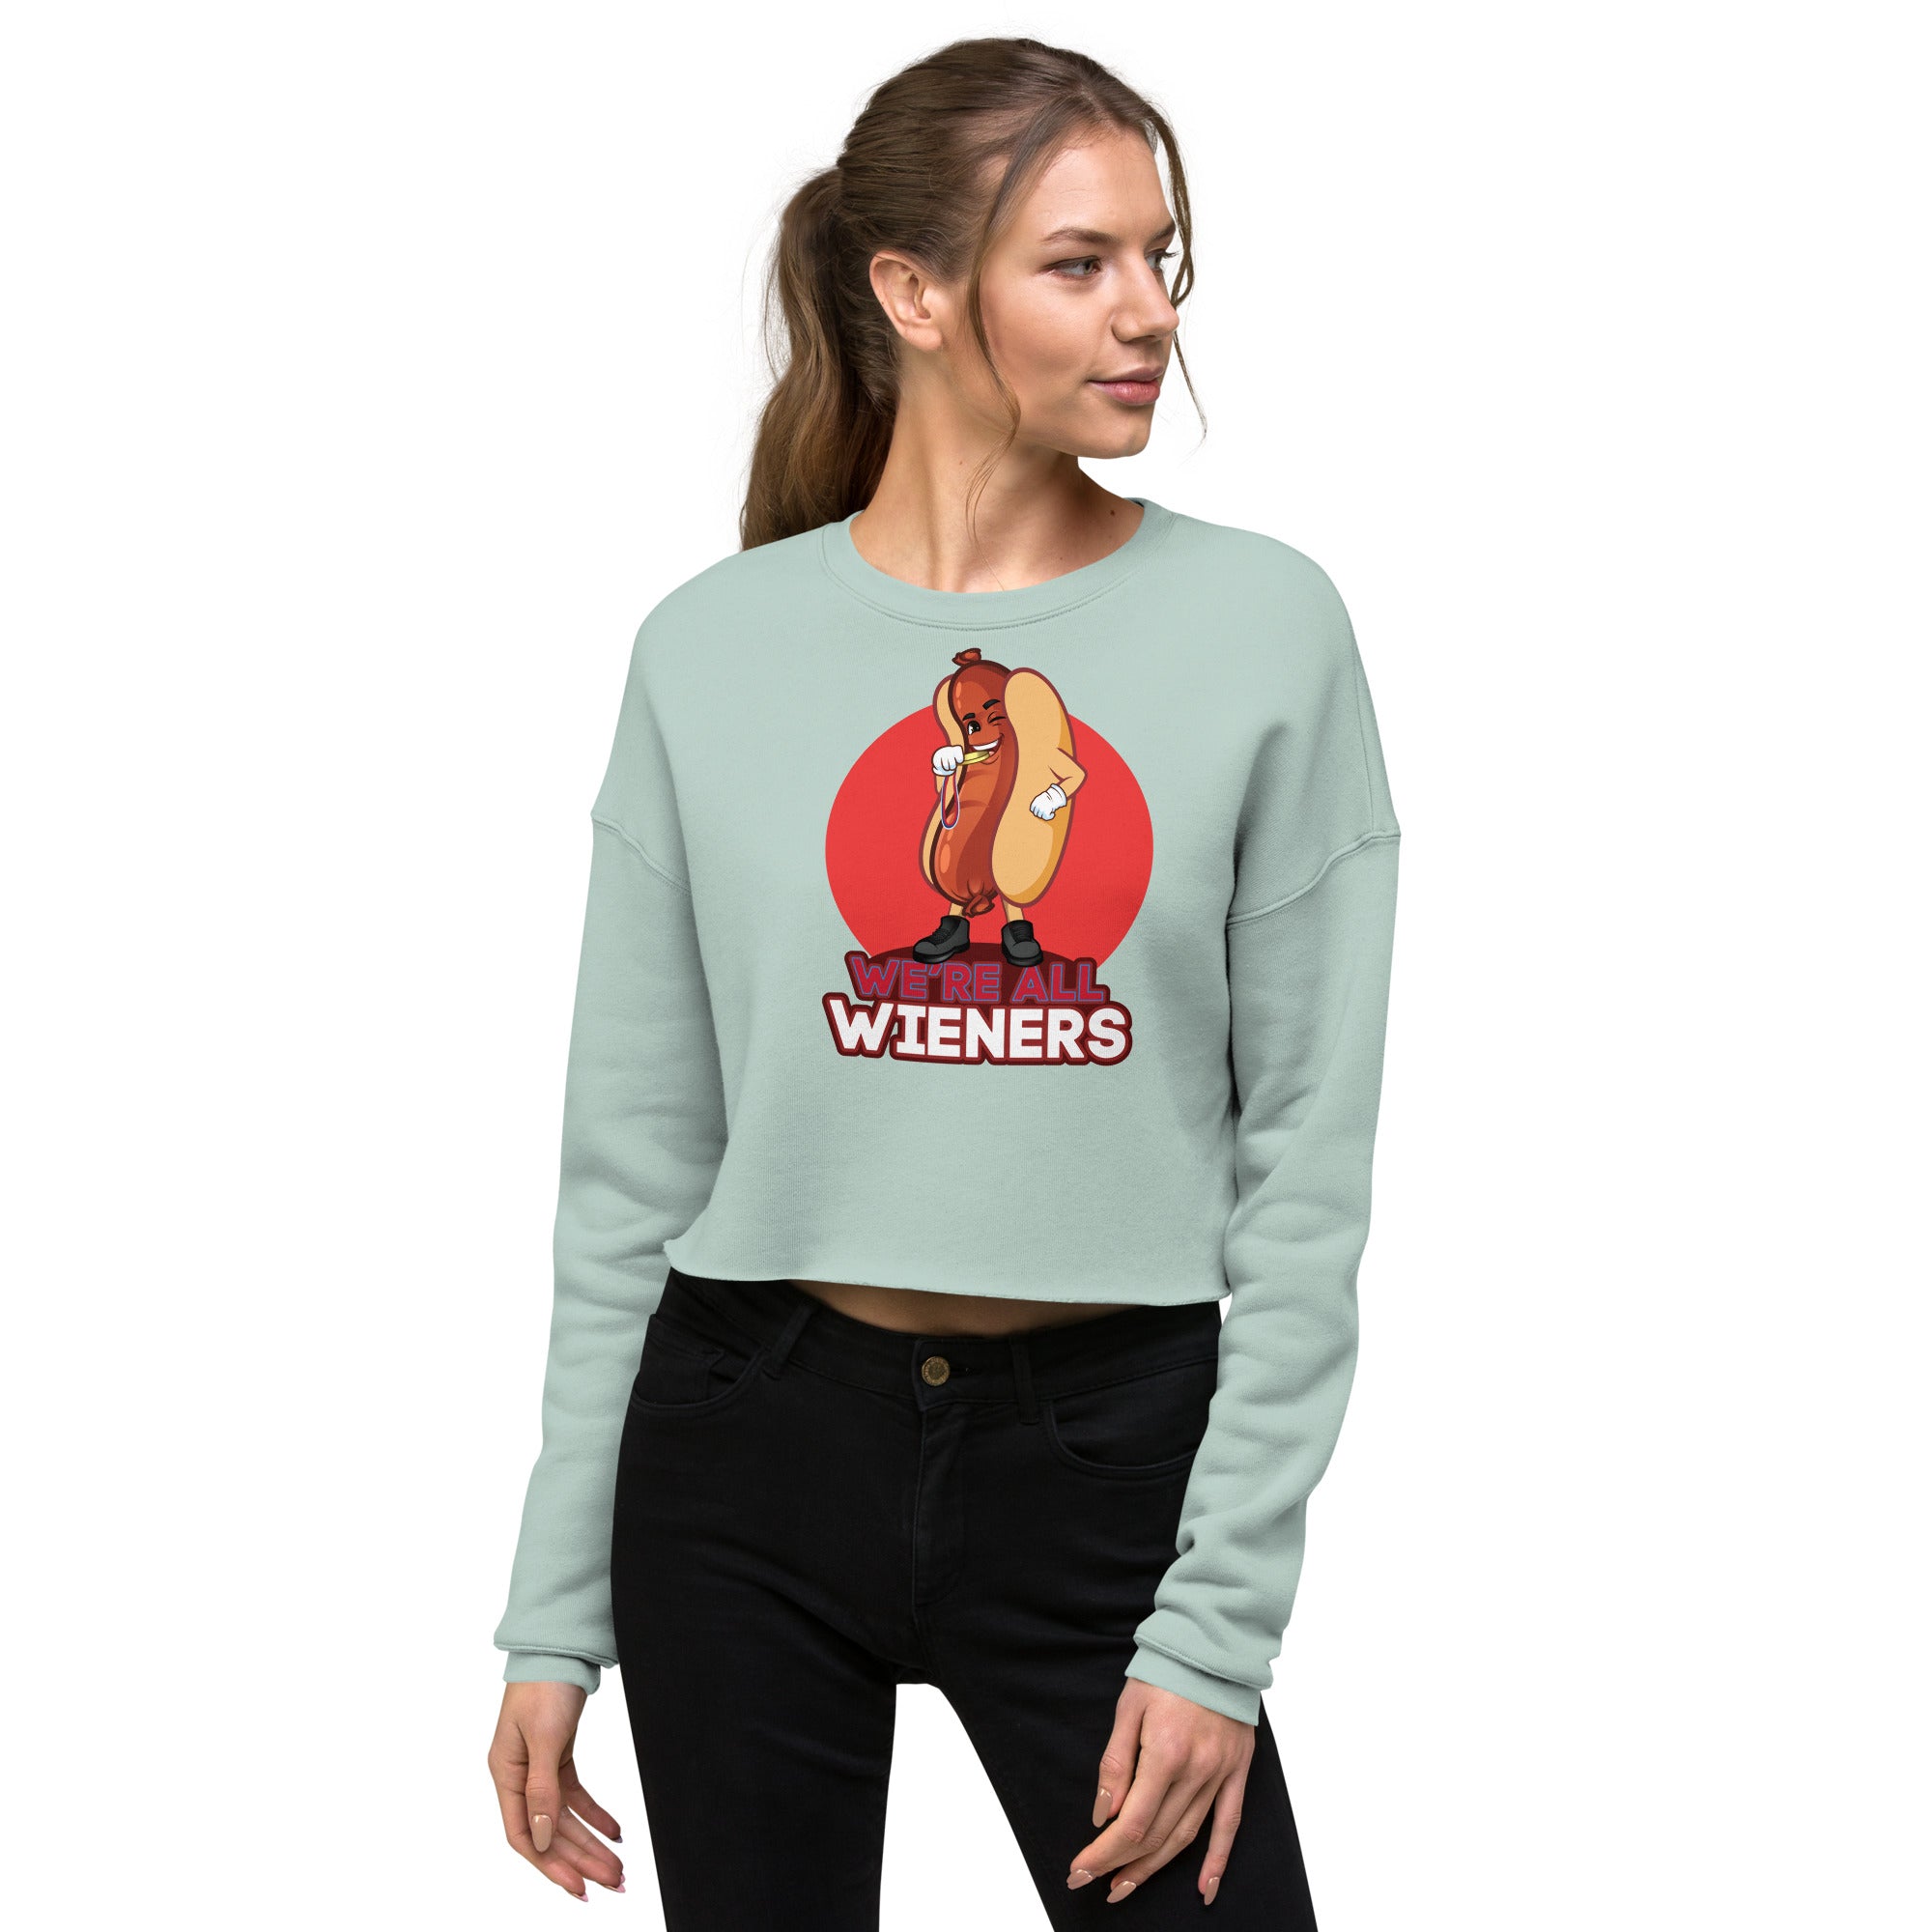 We're All Wieners Women's Crop Sweatshirt - Red